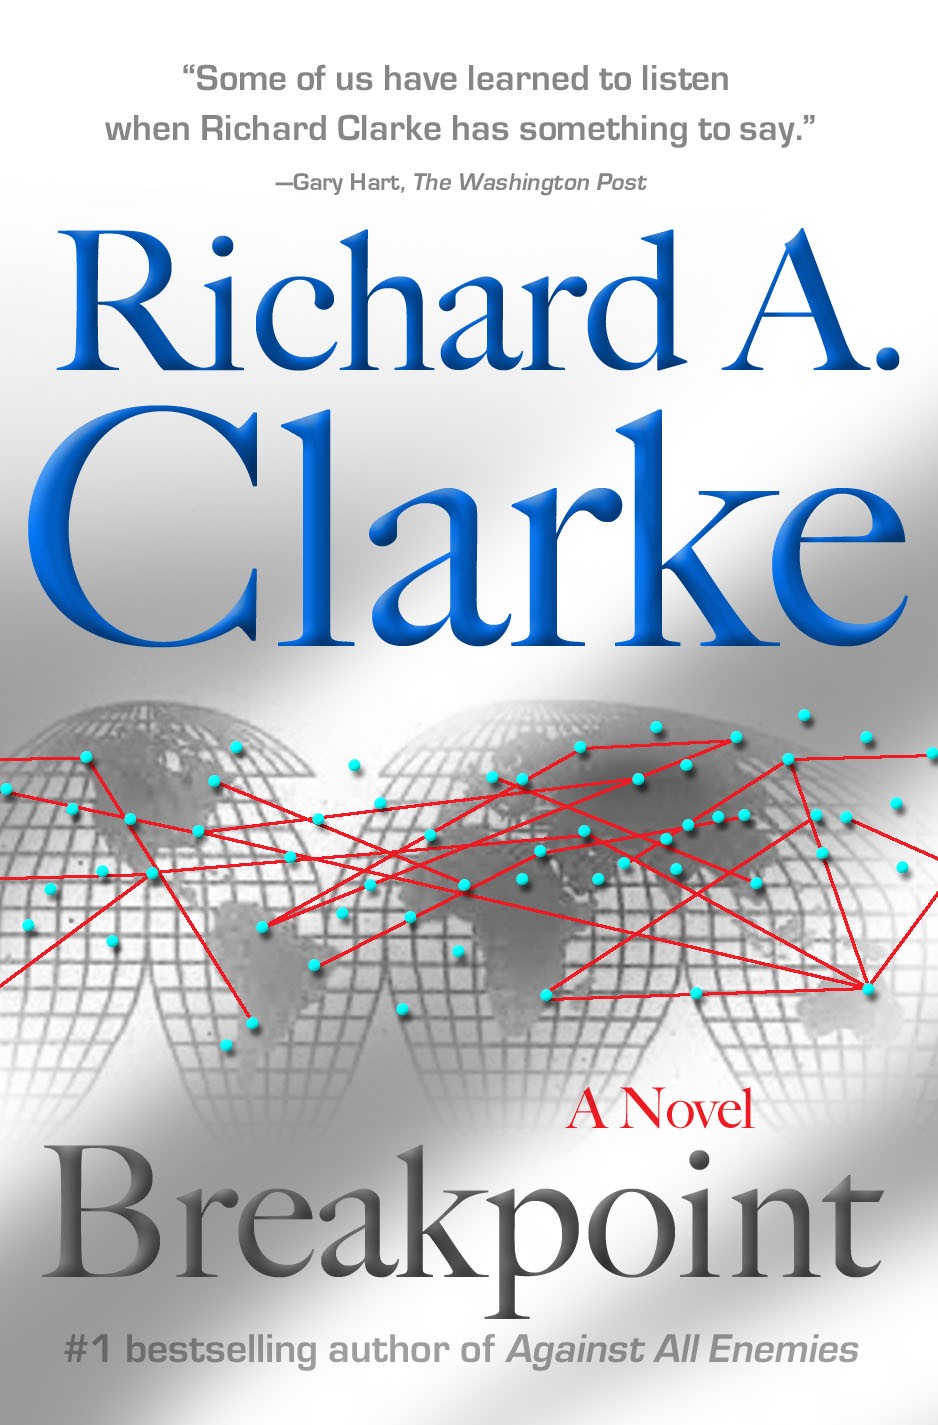 Breakpoint - a novel written by Richard A Clarke